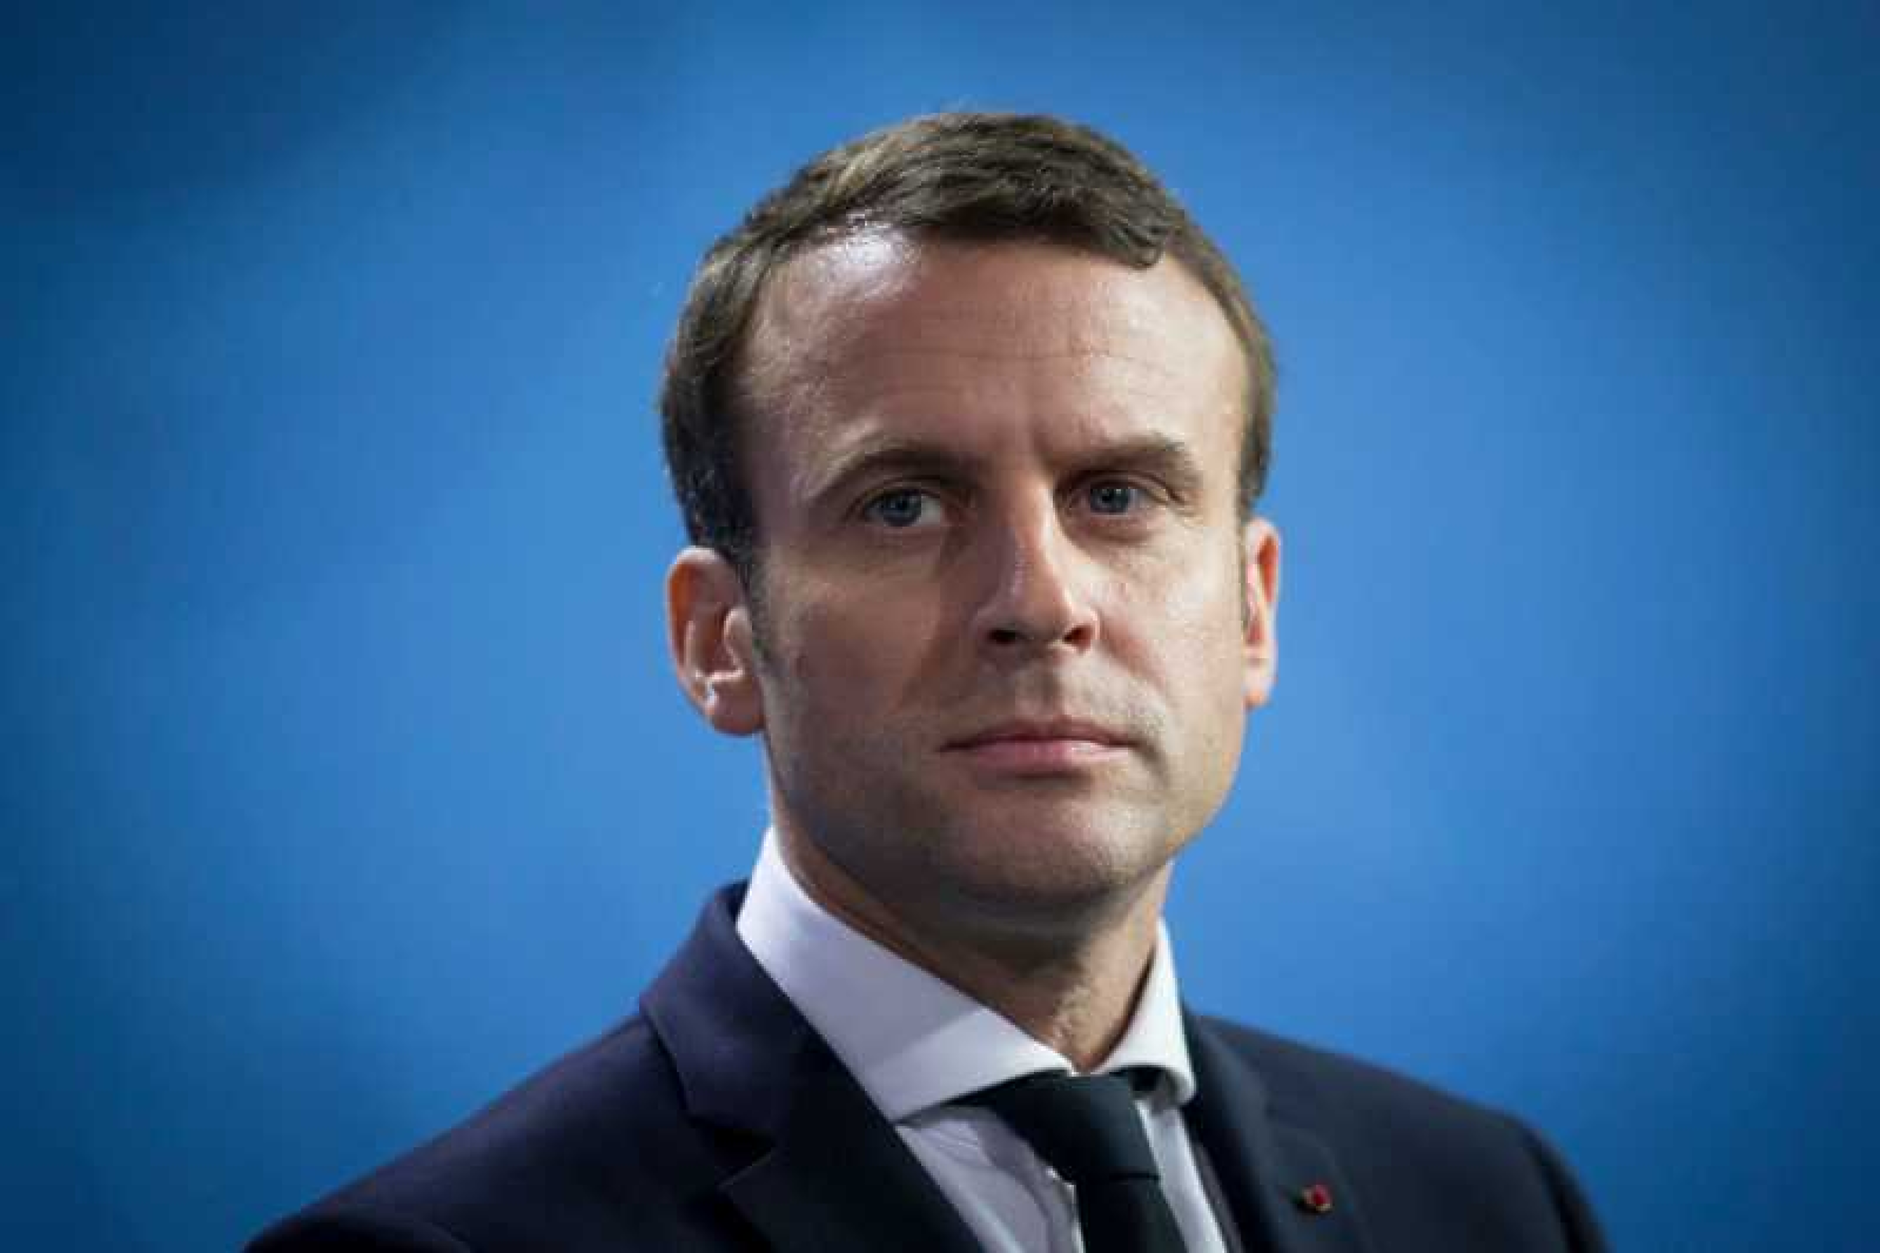 Близо трима от всеки четирима французи са недоволни от президента Макрон